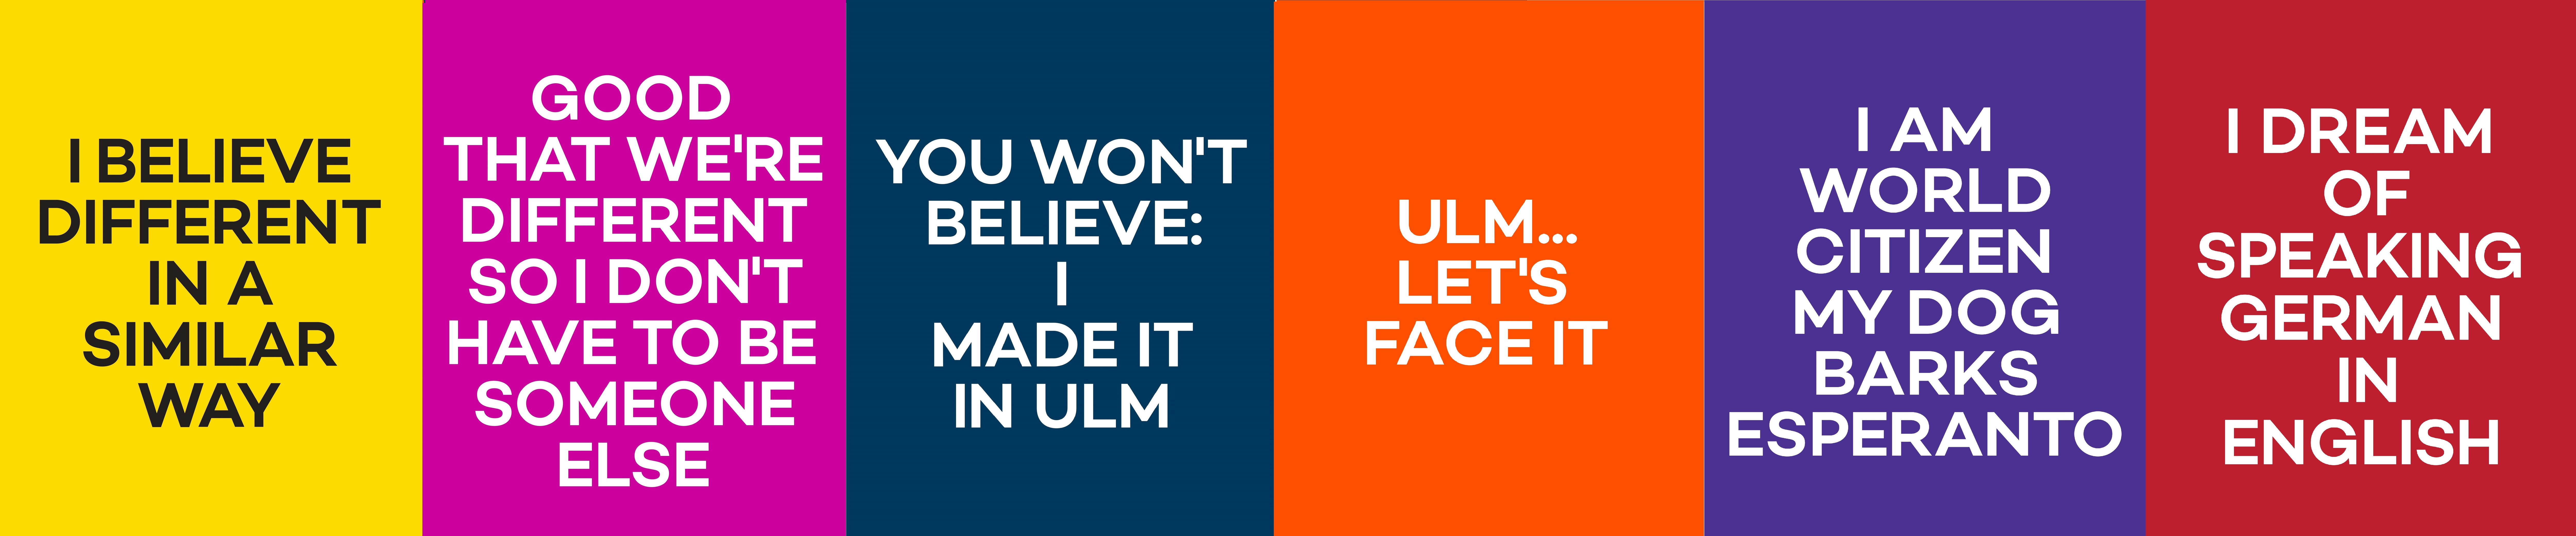 Poster der Ulm-Kampange